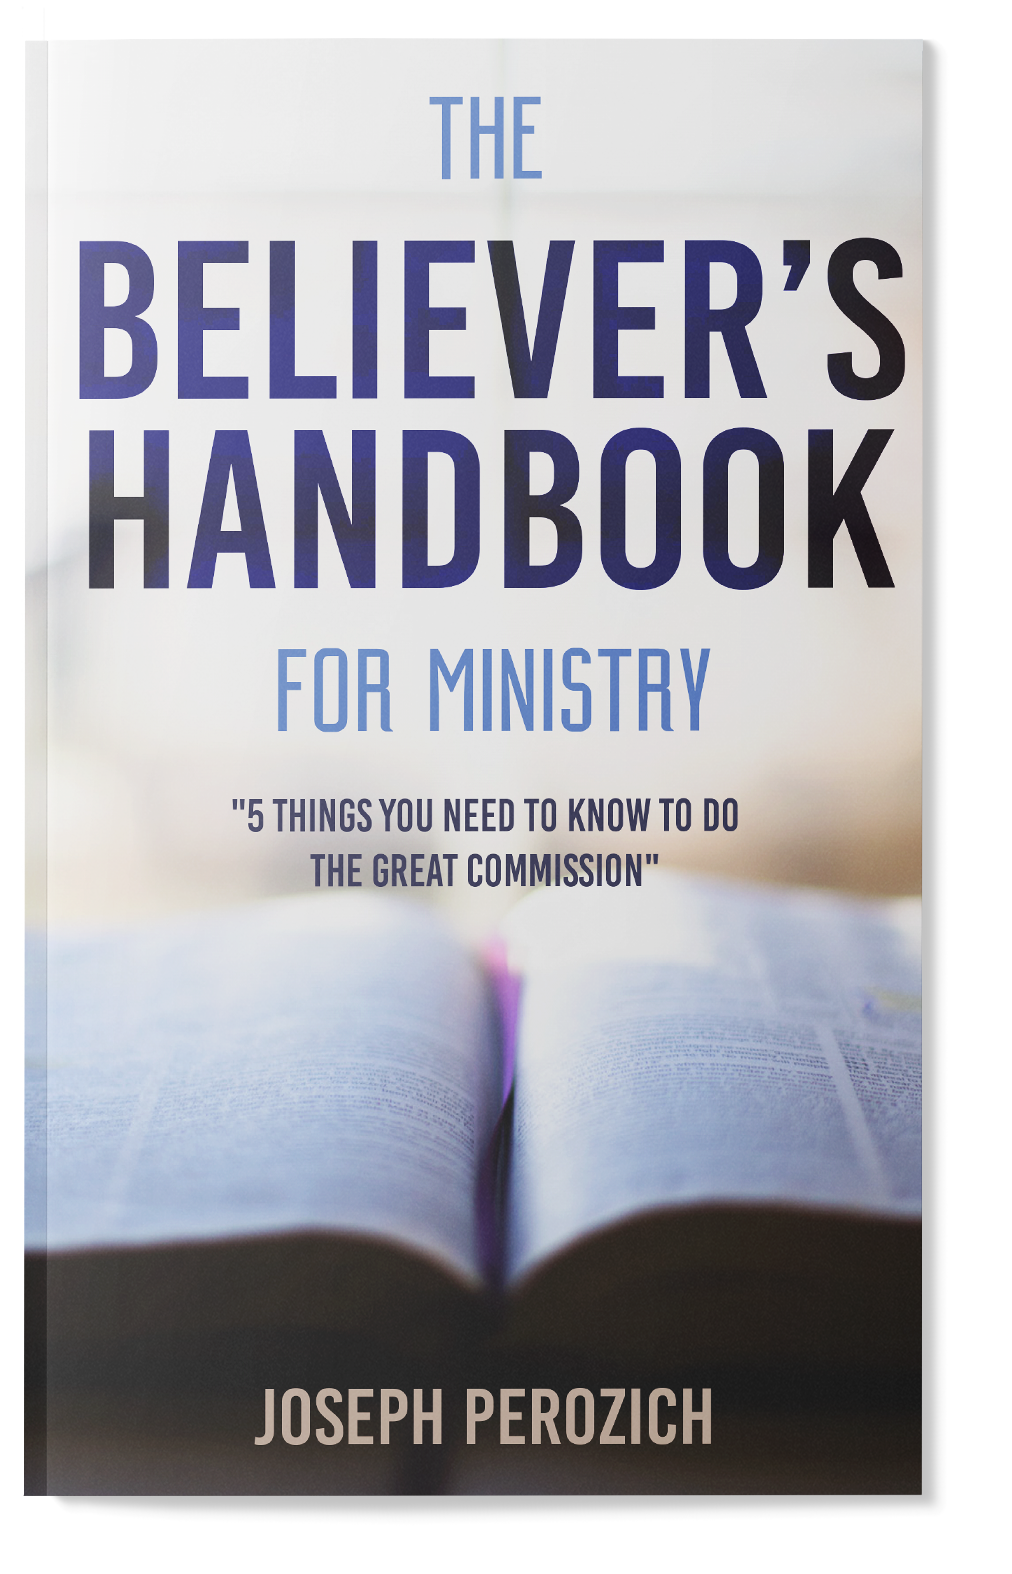 The Believer’s Handbook